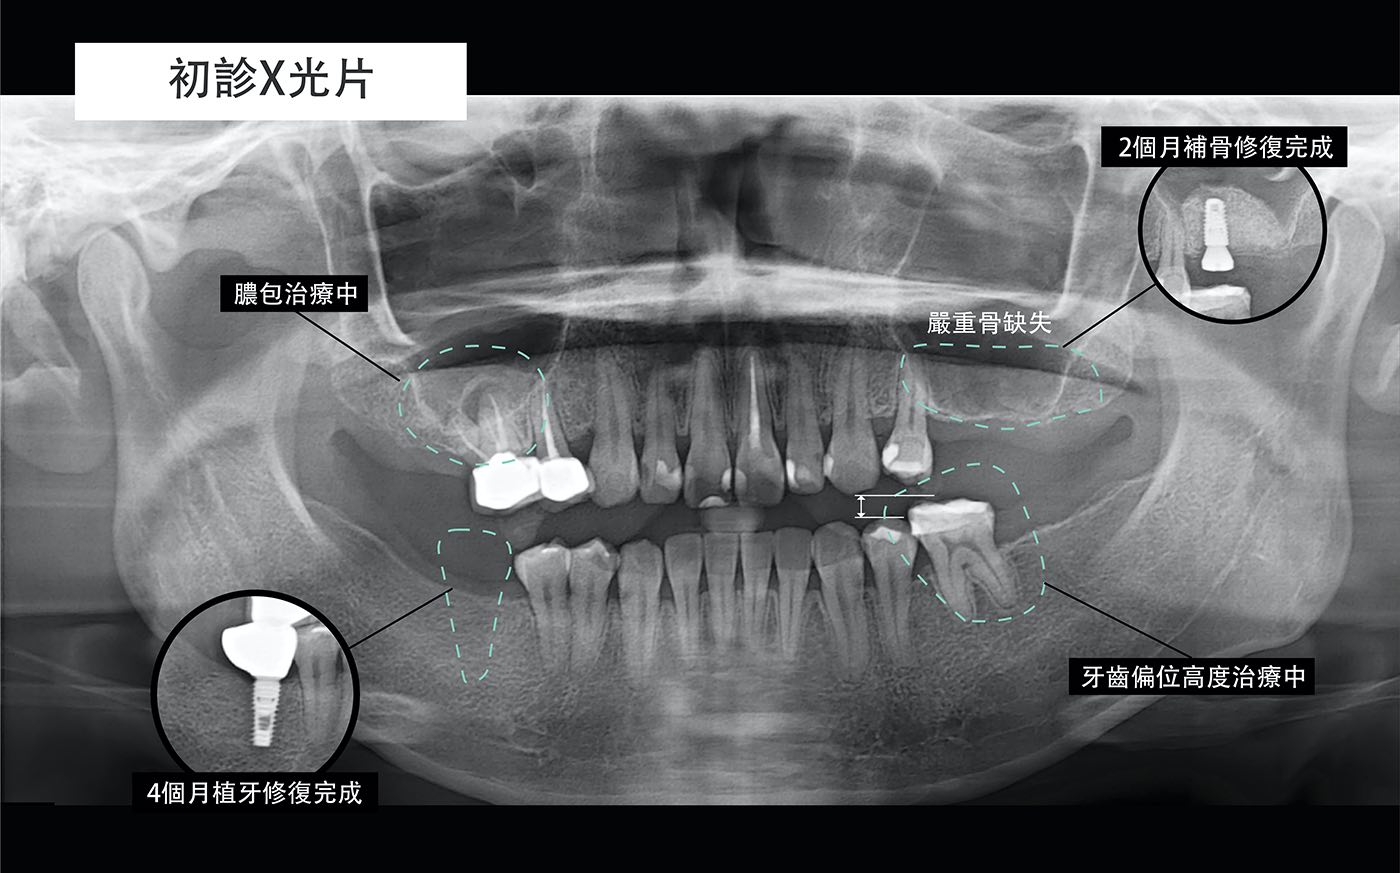 陶瓷貼片療程前拍攝的X光片，後牙有缺牙、齒槽骨流失等問題，先進行補骨與植牙修復